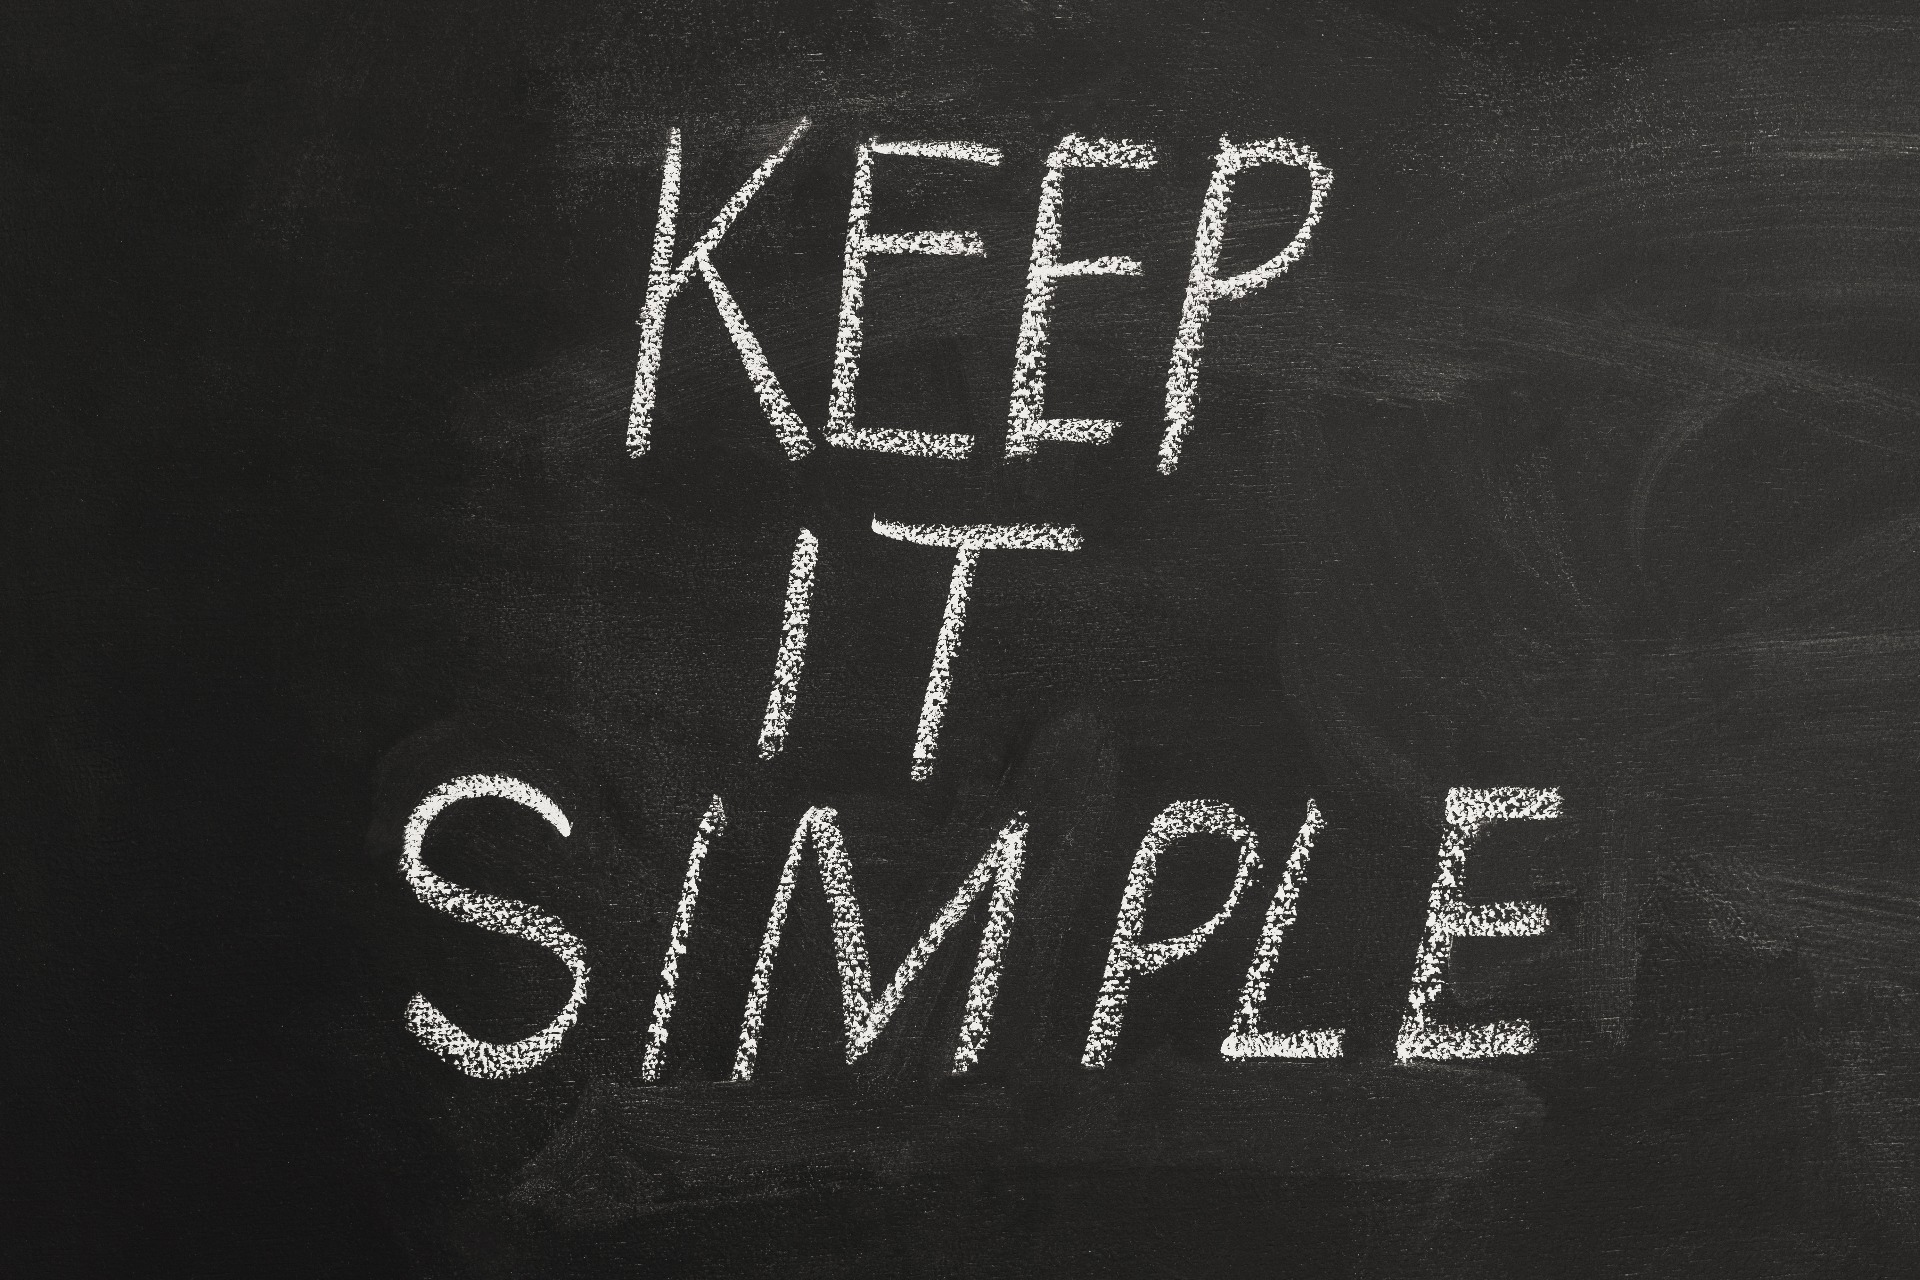 'Keep it Simple' written in white chalk on a black board